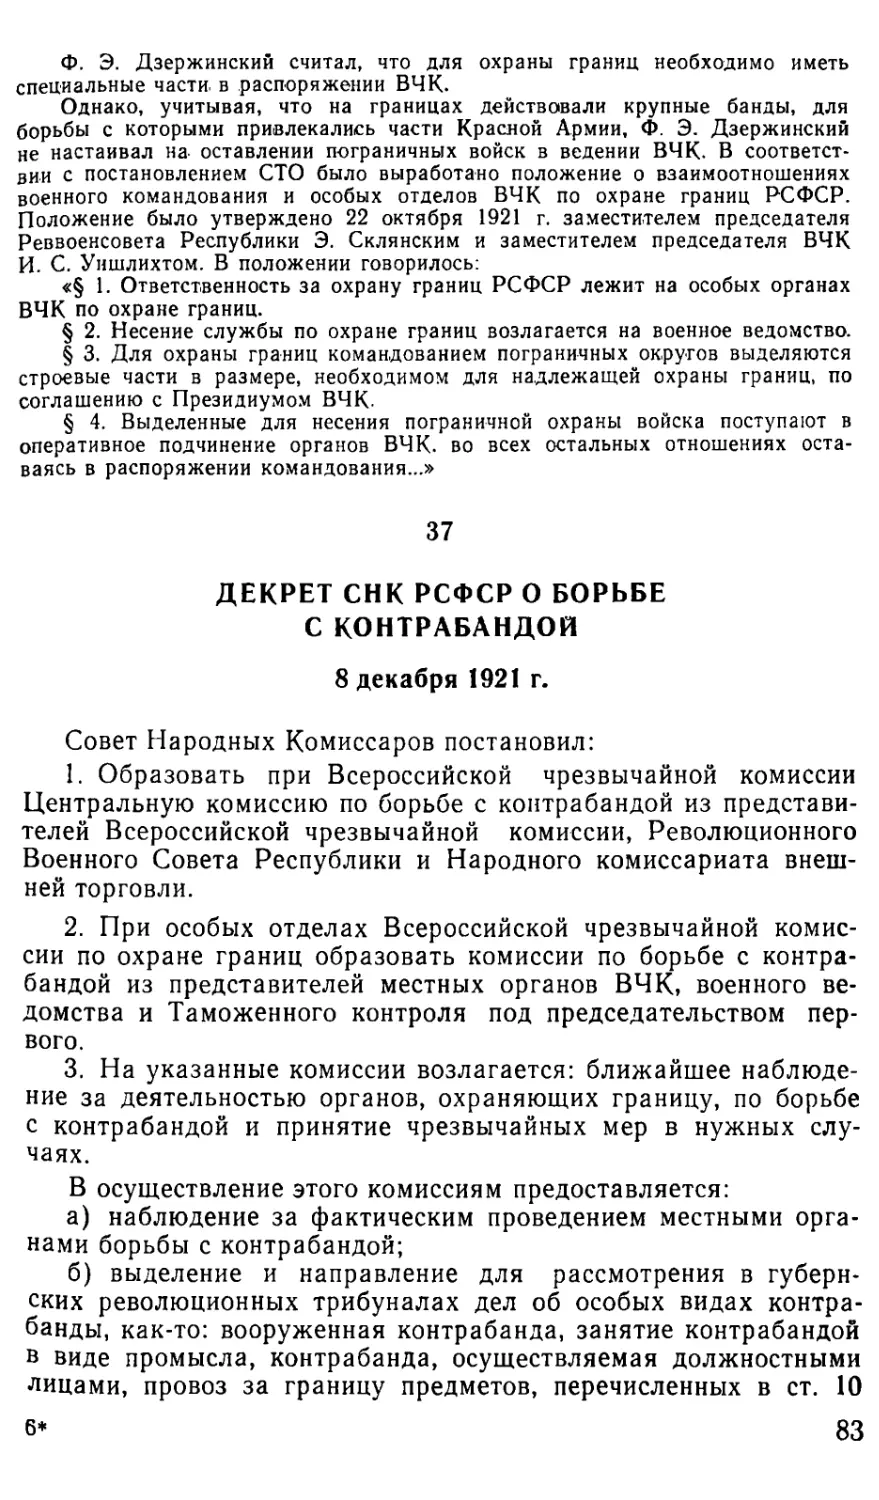 37. Декрет СПК РСФСР о борьбе с контрабандой. 8 декабря 1921 г